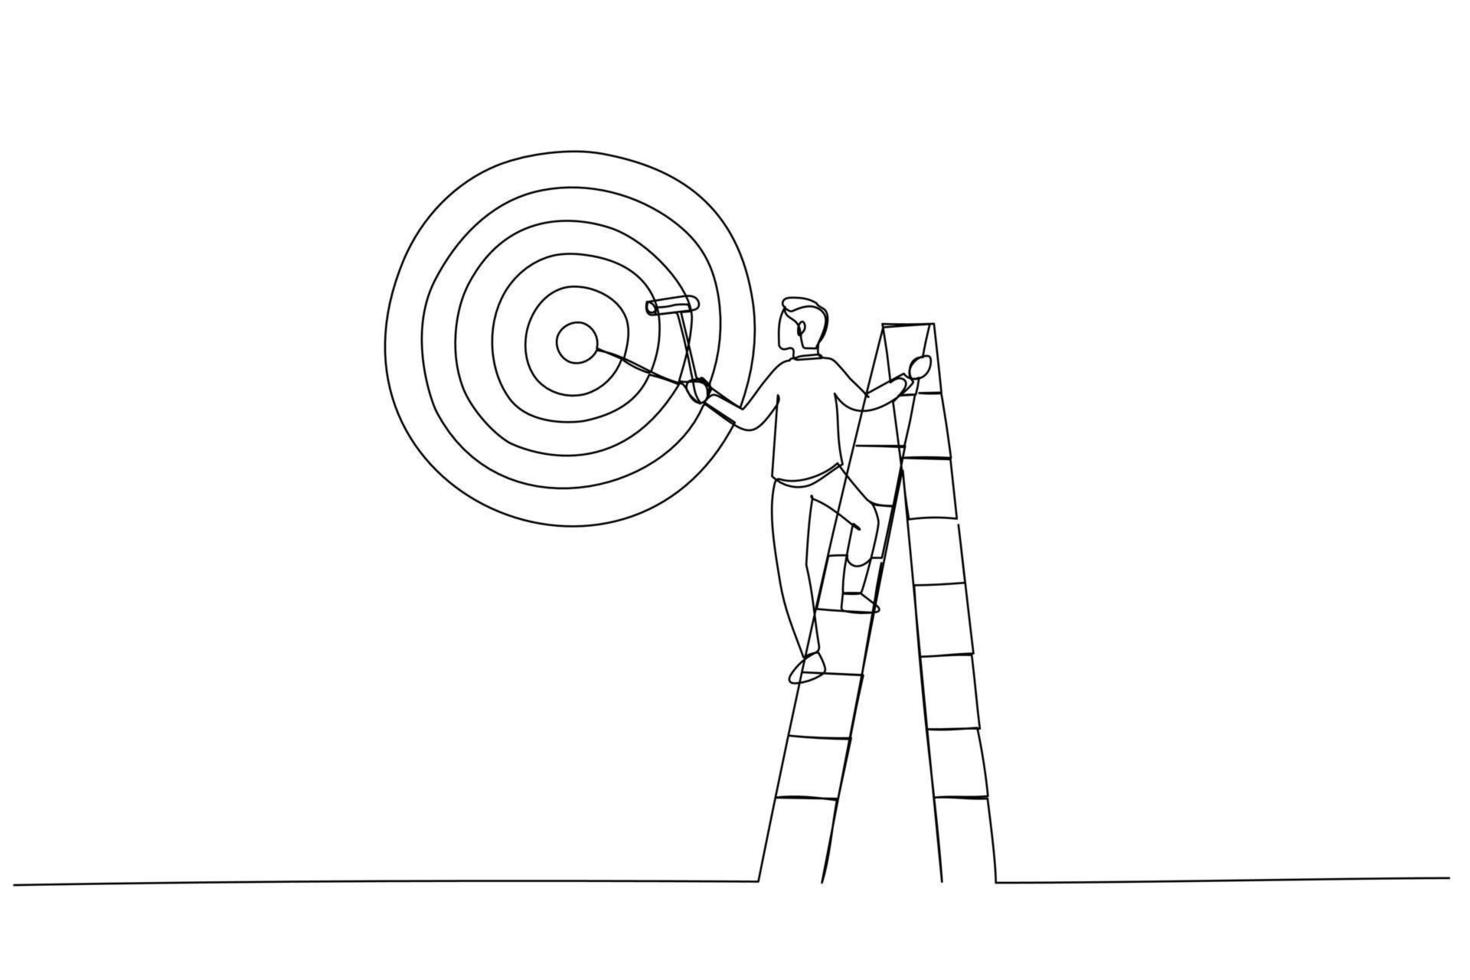 dessin d'un homme d'affaires ambitieux sur une échelle à l'aide d'un rouleau à peinture pour peindre un grand jeu de fléchettes, cible de tir à l'arc. dessin au trait continu unique vecteur